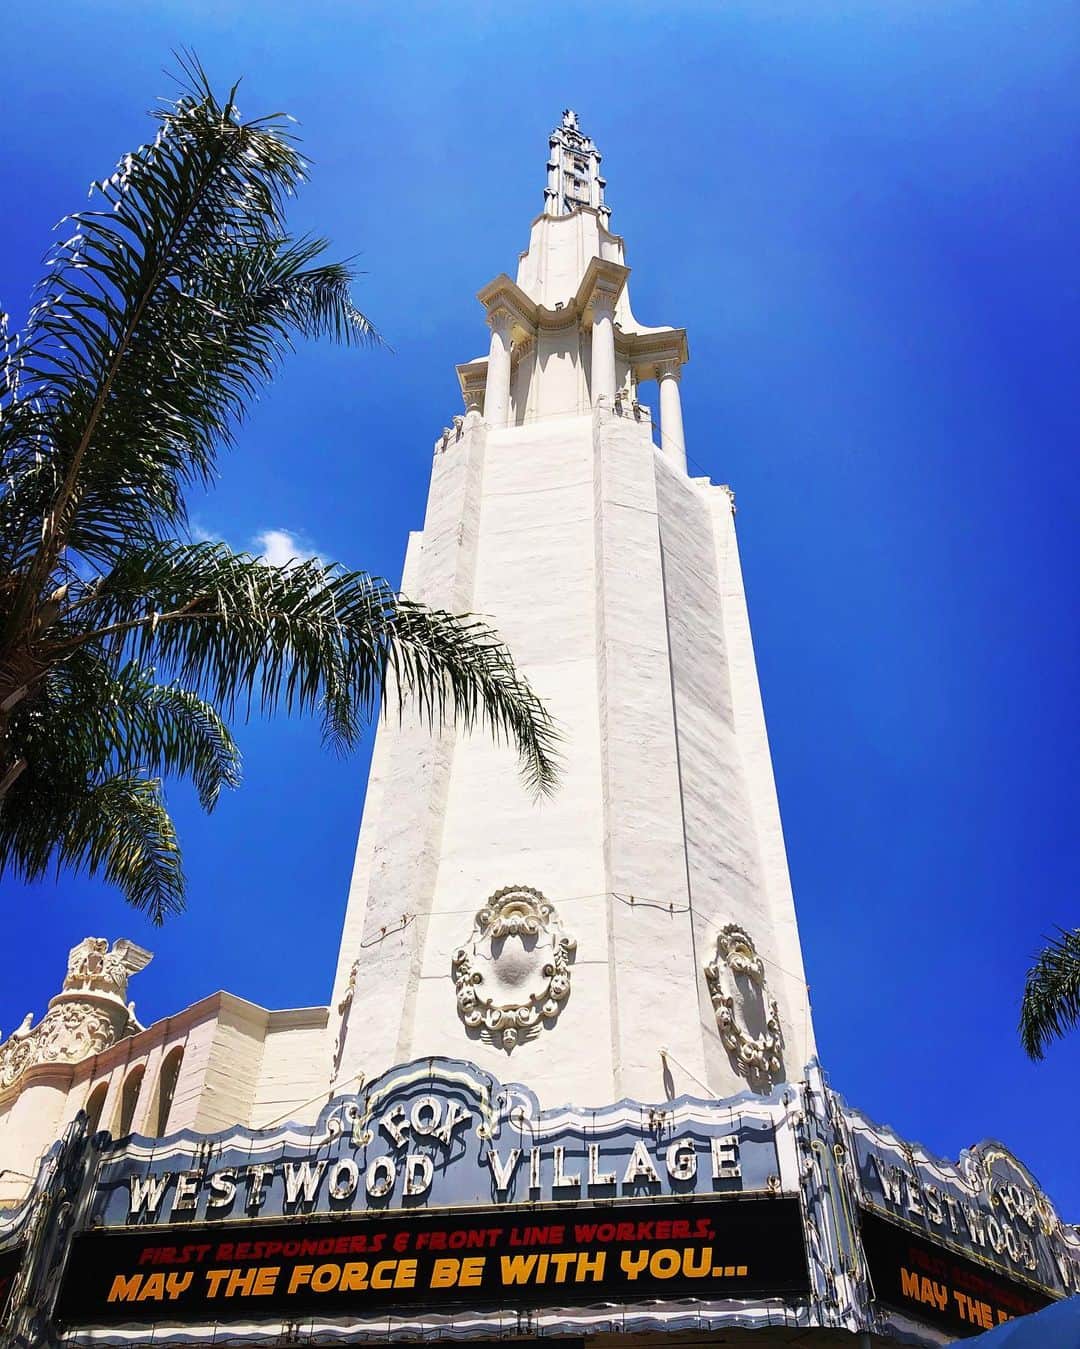 カリフォルニアスタイルのインスタグラム：「Westwoodに1931年に建てられて以来、UCLAの学生にも90年間に渡り親しまれてきたFox Theater。 今はCOVID-19と最先端で戦う人達に向け、Jediからのメッセージを発信している。 MAY THE FORCE BE WITH YOU...  #thxrio😋  @foxwestwoodvillage #californiastyle #california #californiadreaming #socal #westwood #hollywood #losangeles #ucla #universityofcalifornia #movies #カリフォルニアスタイル #カリフォルニア #大学 #映画 #スターウォーズ #starwars #jedi #maytheforcebewithyou #ジェダイ #メイザフォースビーウィズユー #カリフォルニア大学 #カリフォルニア大学ロサンゼルス校 #フォース #force #jedimaster #lukeskywalker #darthvader #obiwankenobi #moviefansart」